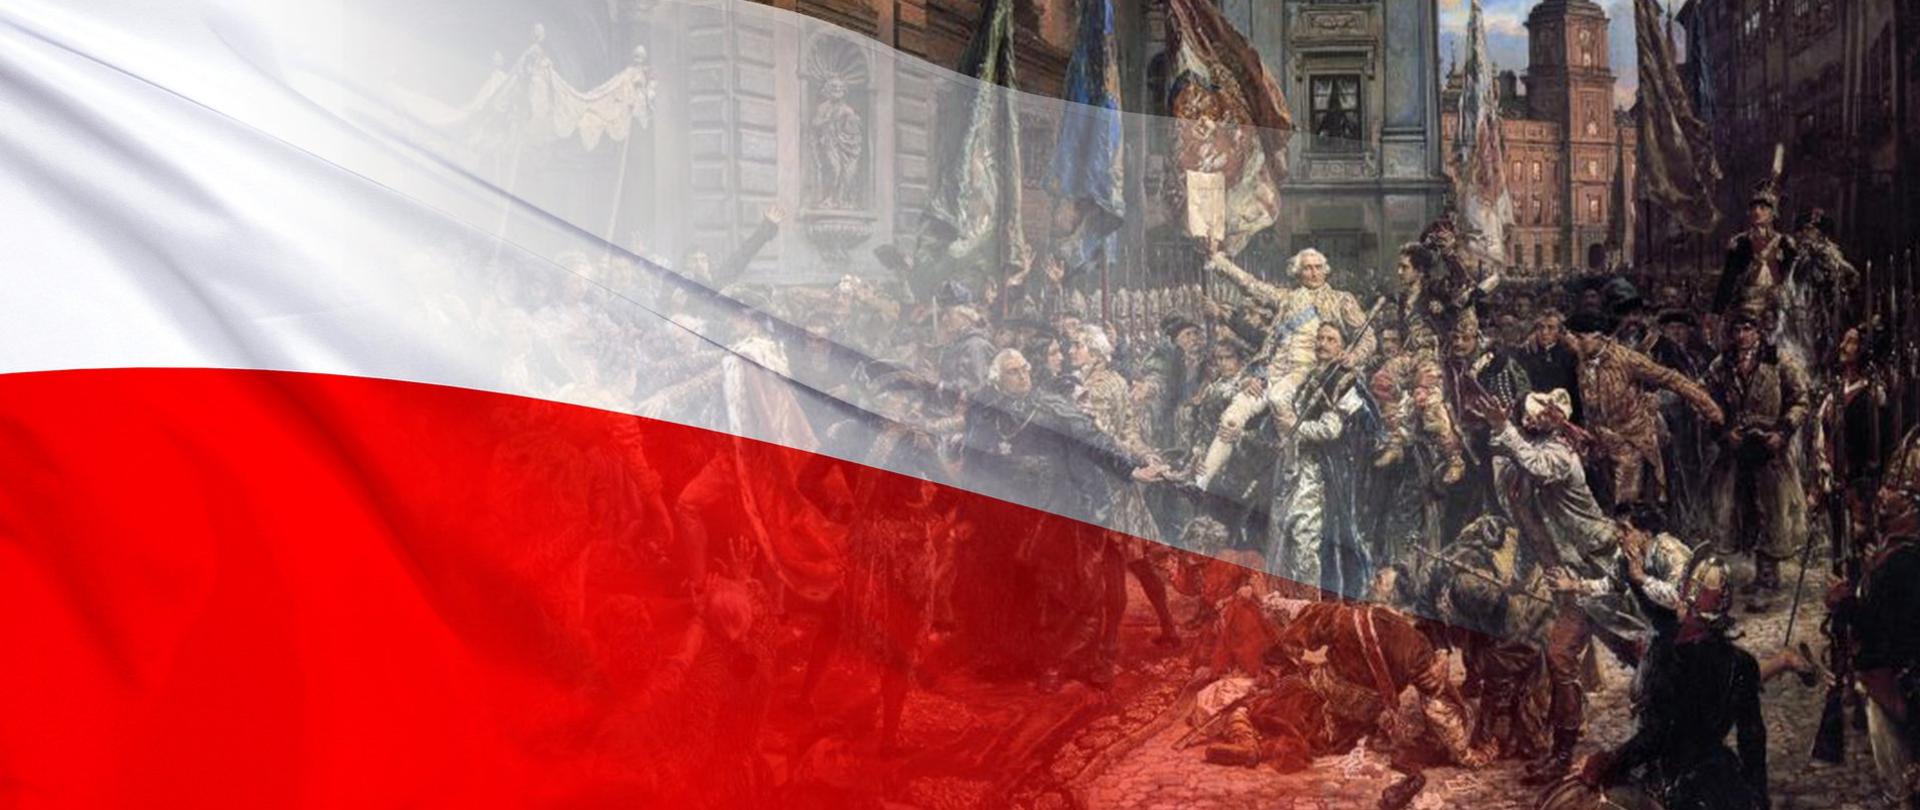 Z lewej strony flaga biało czerwona, z prawej fragment obrazu Jana Matejki "Konstytucja 3 maja 1971 roku"